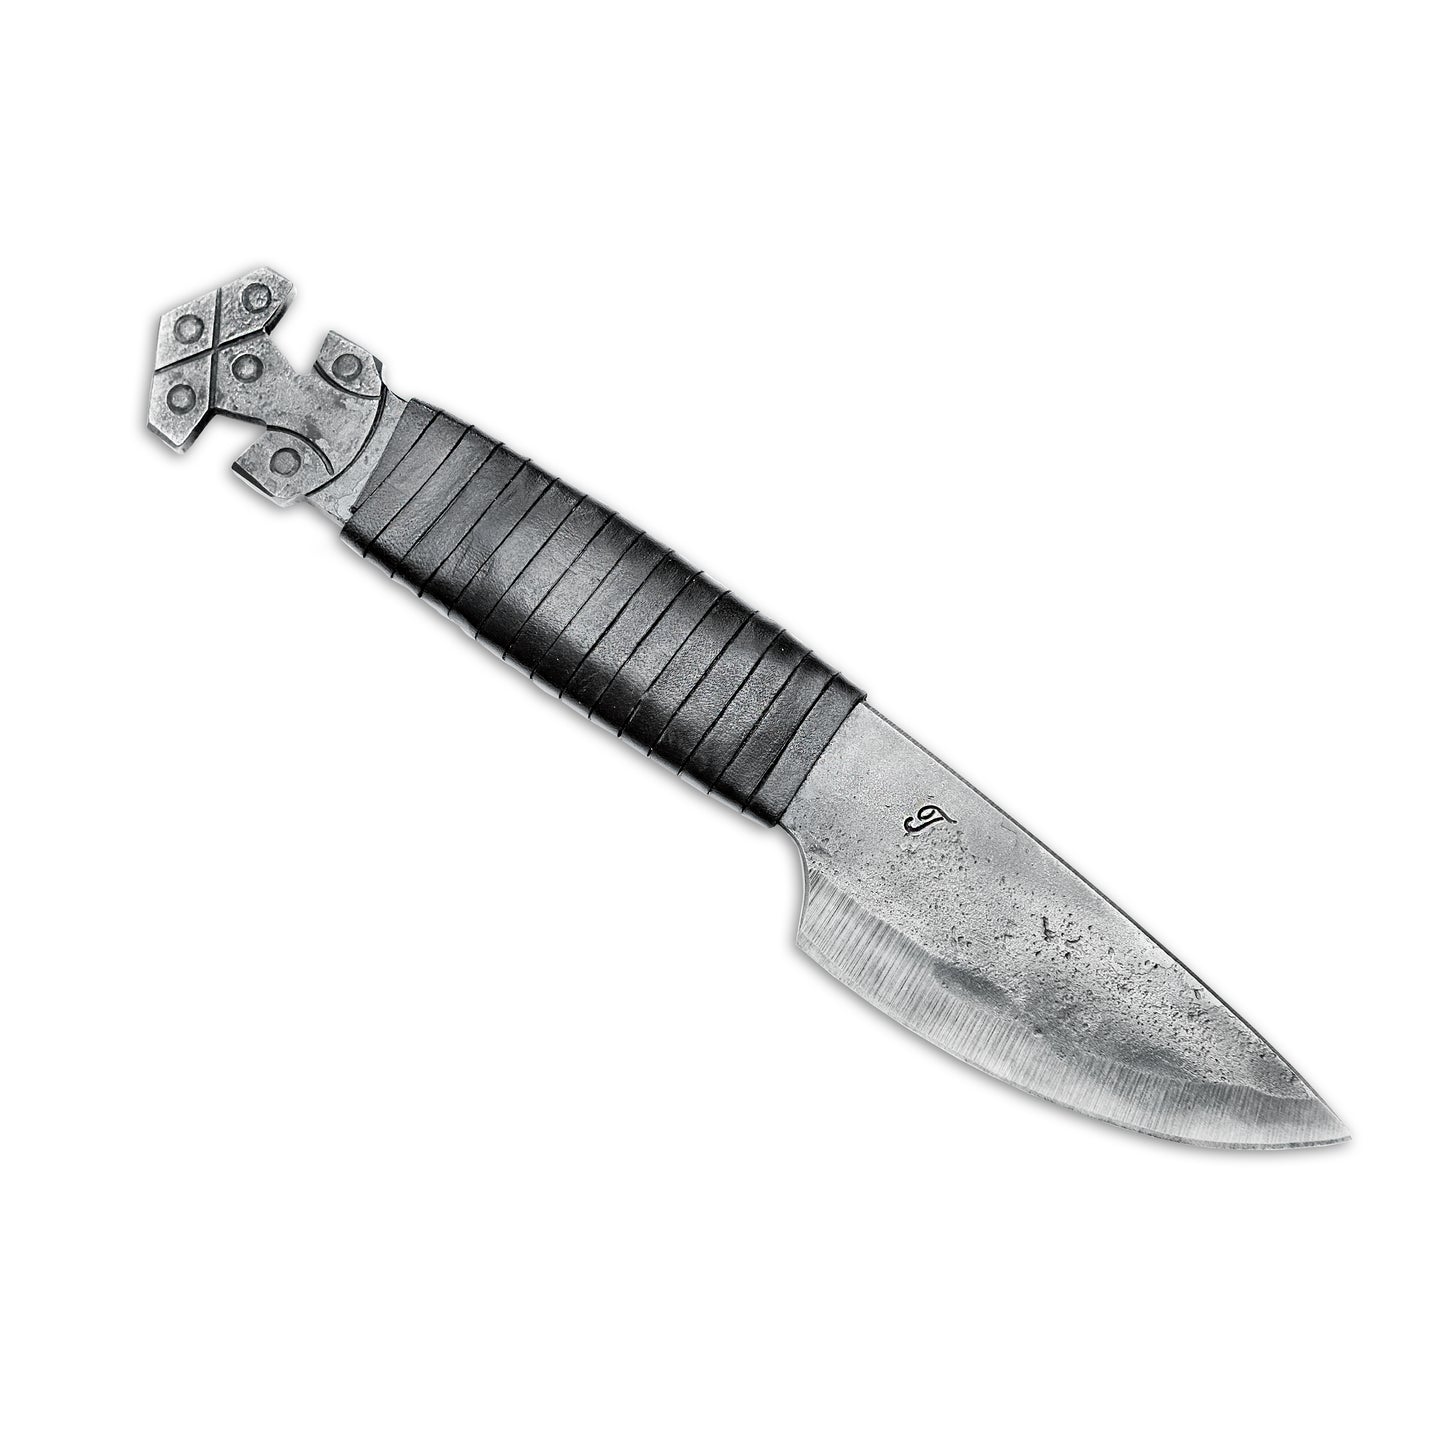 Ensemble unique - couteau Celtic Thor forgé avec fourreau, bracelet et porte-clés